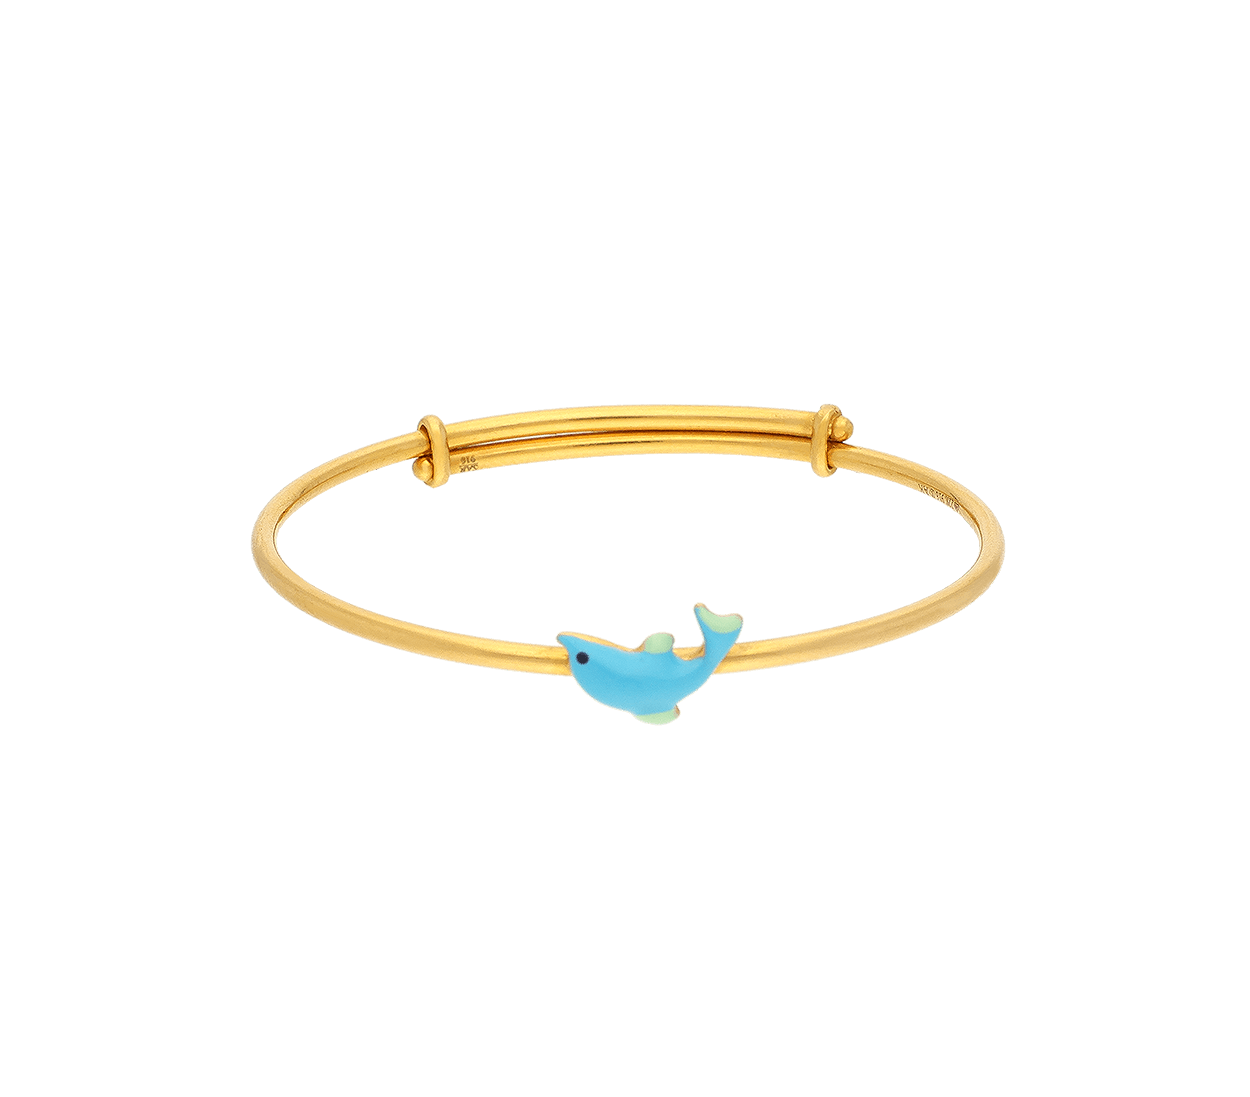 Buy Delicate Rose Gold Bracelets Online For Ladies – Gehna Shop